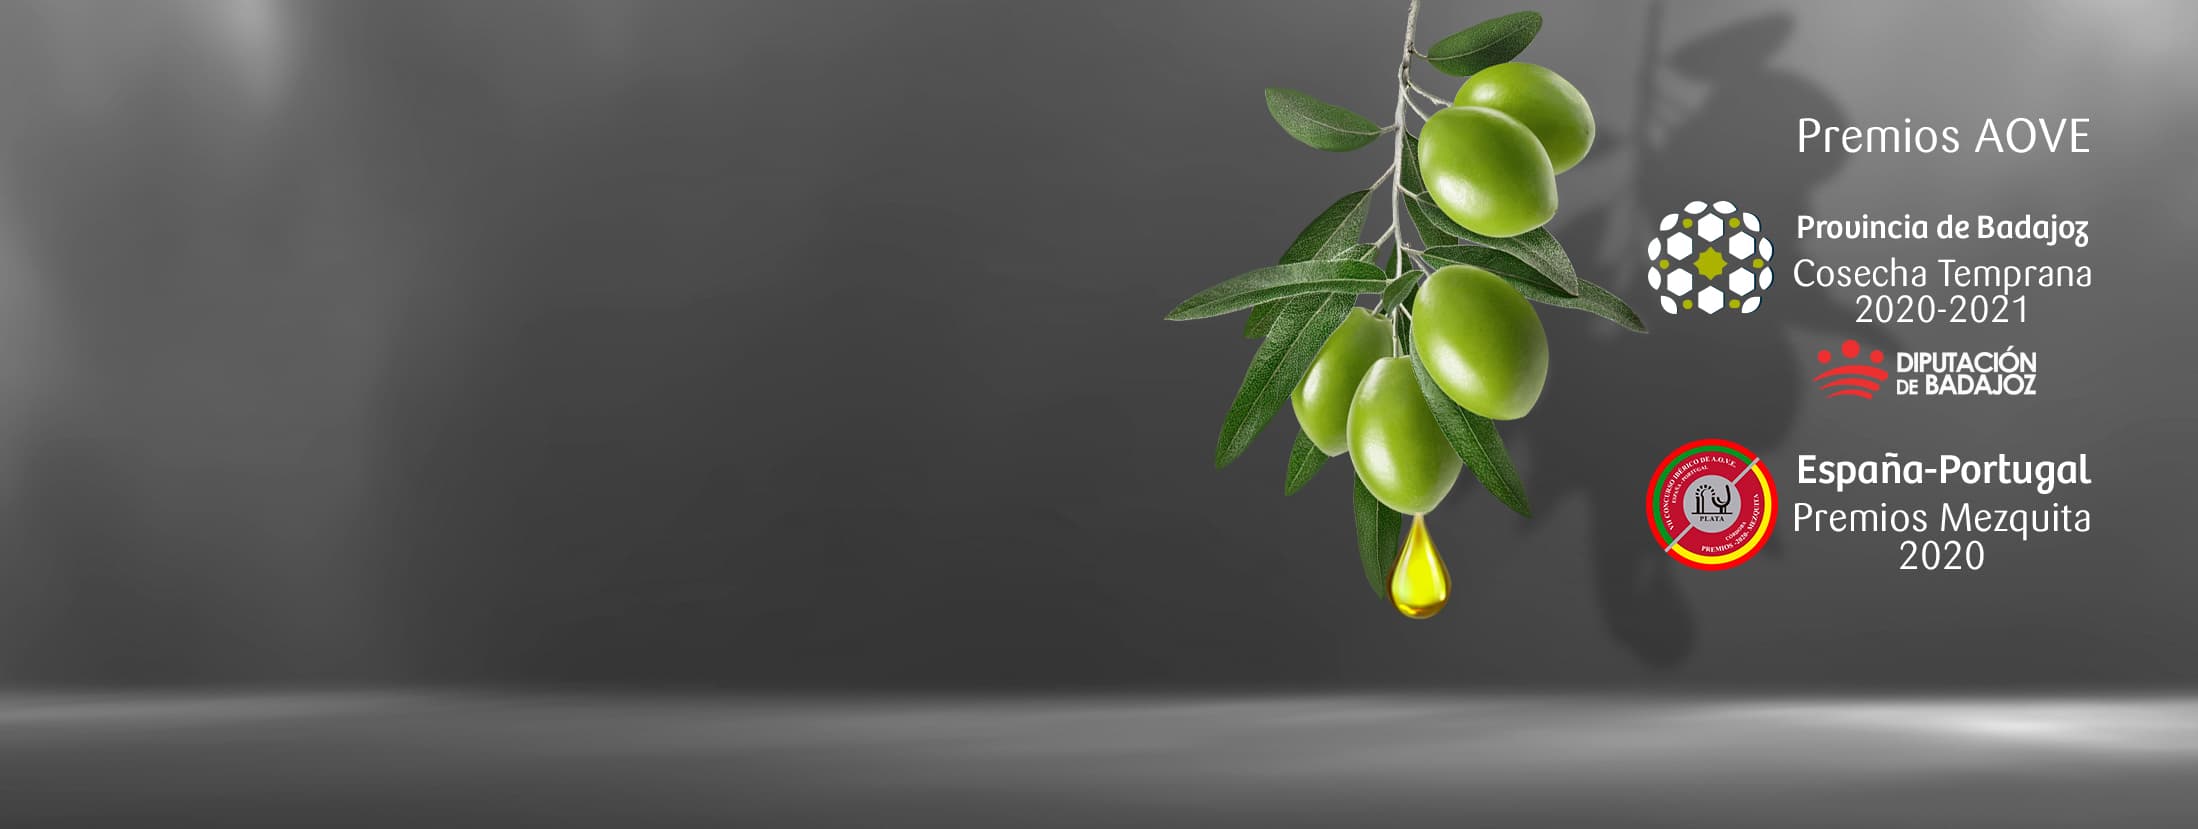 premios aceite de oliva de extremadura